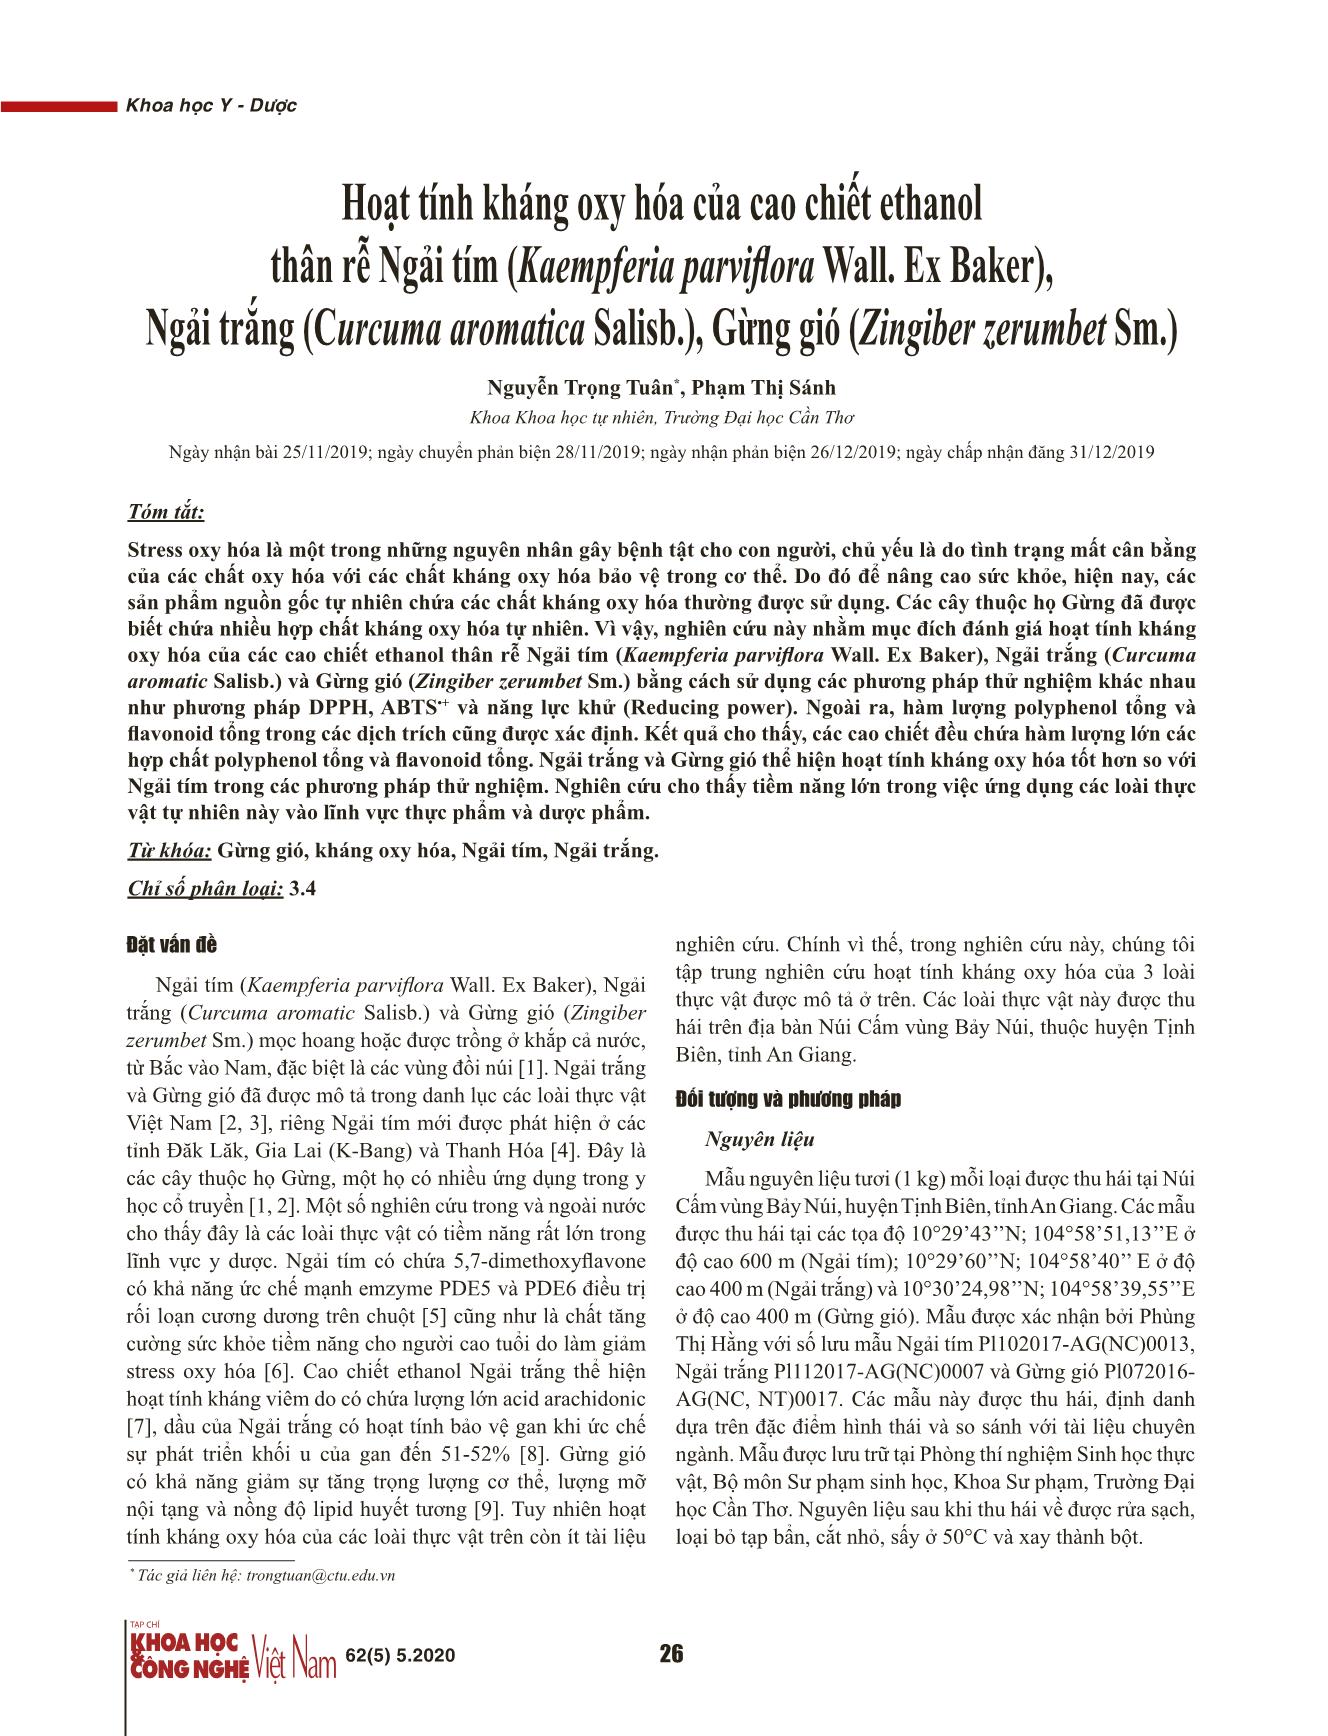 Hoạt tính kháng oxy hóa của cao chiết ethanol thân rễ Ngải tím (Kaempferia parviflora Wall. Ex Baker), Ngải trắng (Curcuma aromatica Salisb.), Gừng gió (Zingiber zerumbet Sm.) trang 1